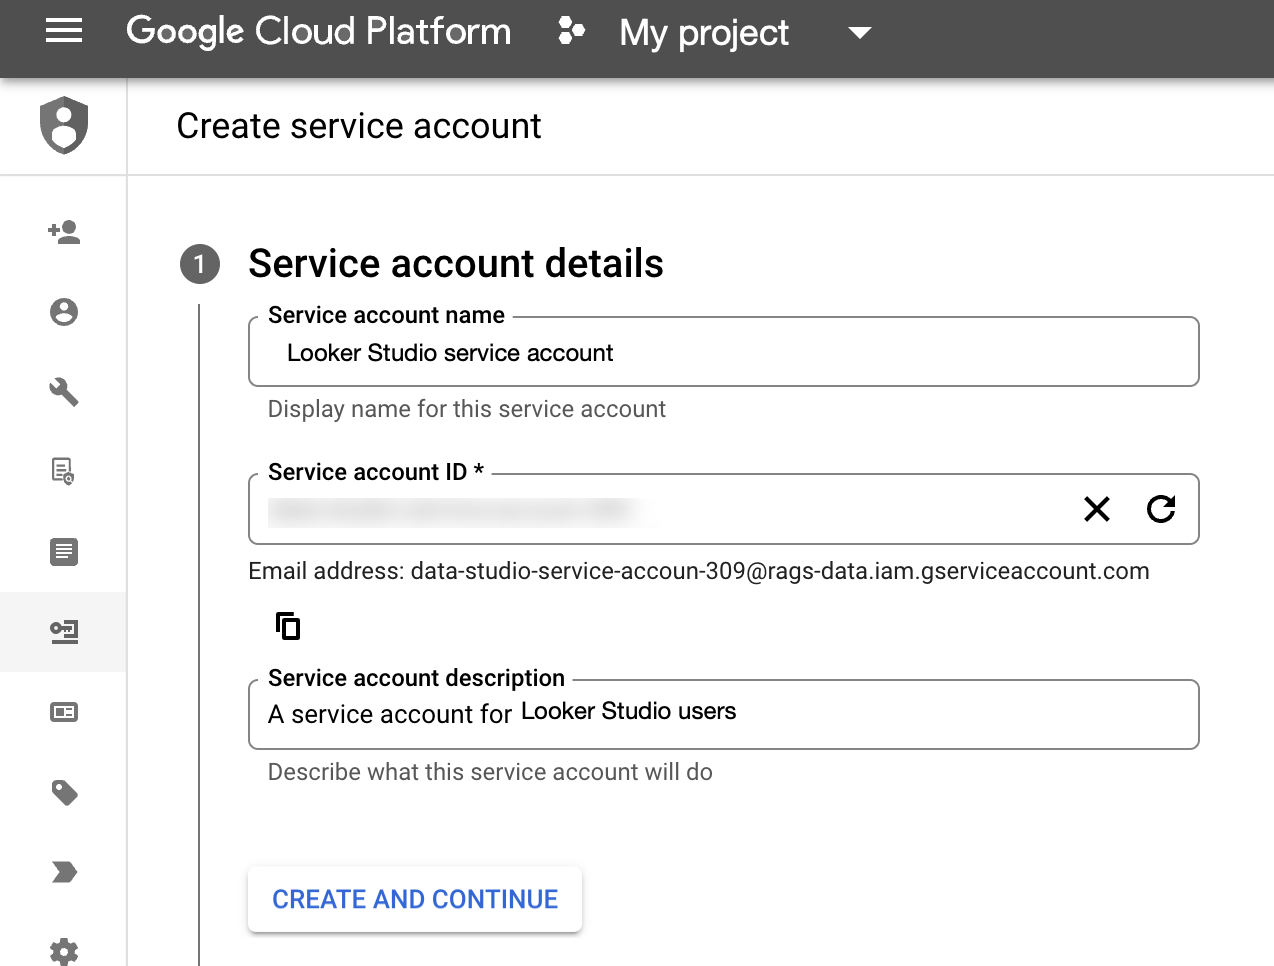 Google Cloud Platform Create service account page with Service account name, Service account ID, and Service account description fields filled out.